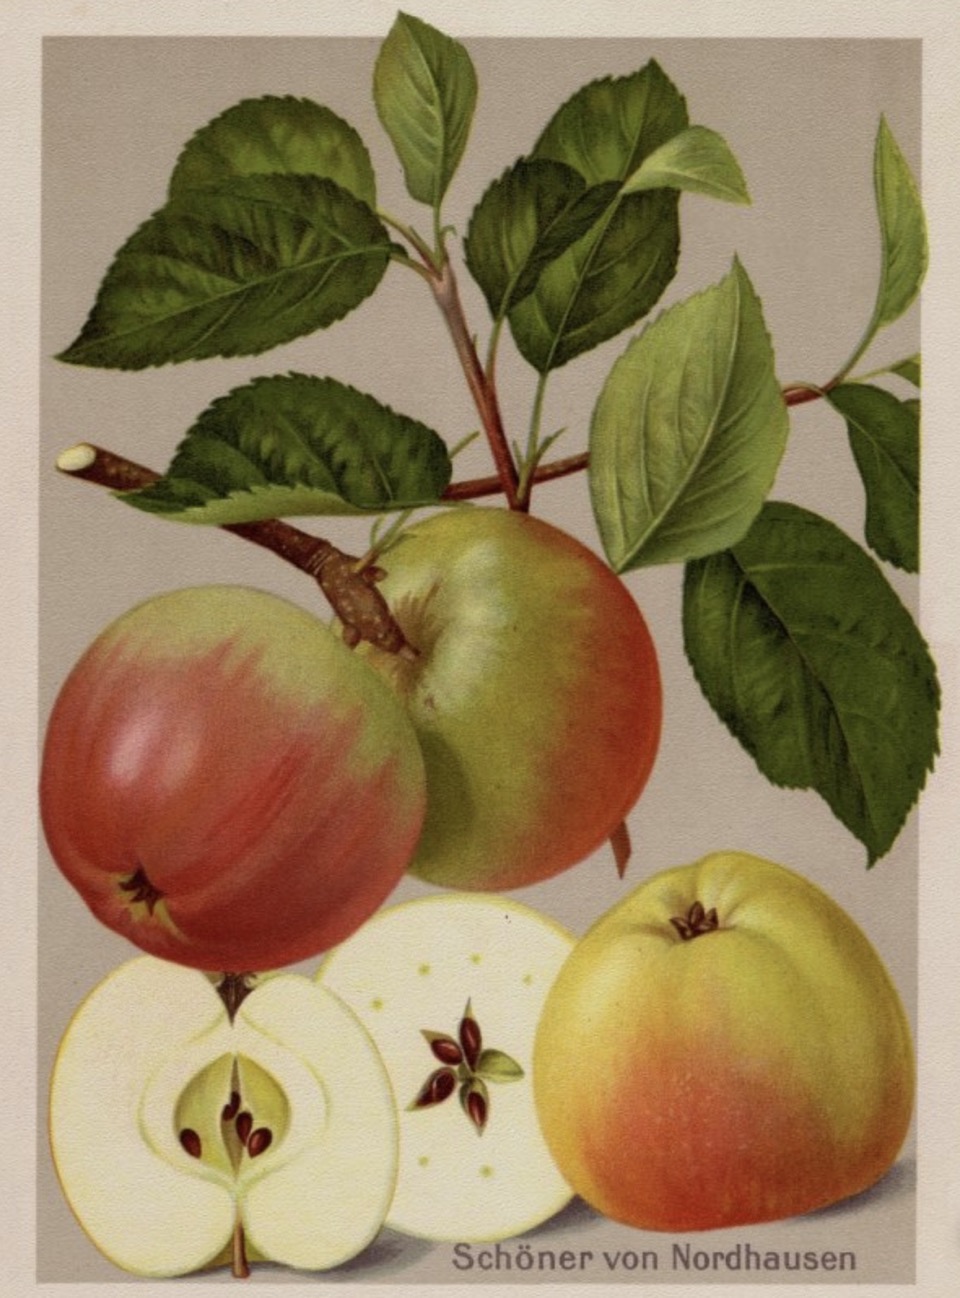 Historische Abbildung eines Zweigs mit grünlich-rötlichen Äpfeln und einen aufgeschnittenen Apfel; BUND Lemgo Obstsortendatenbank